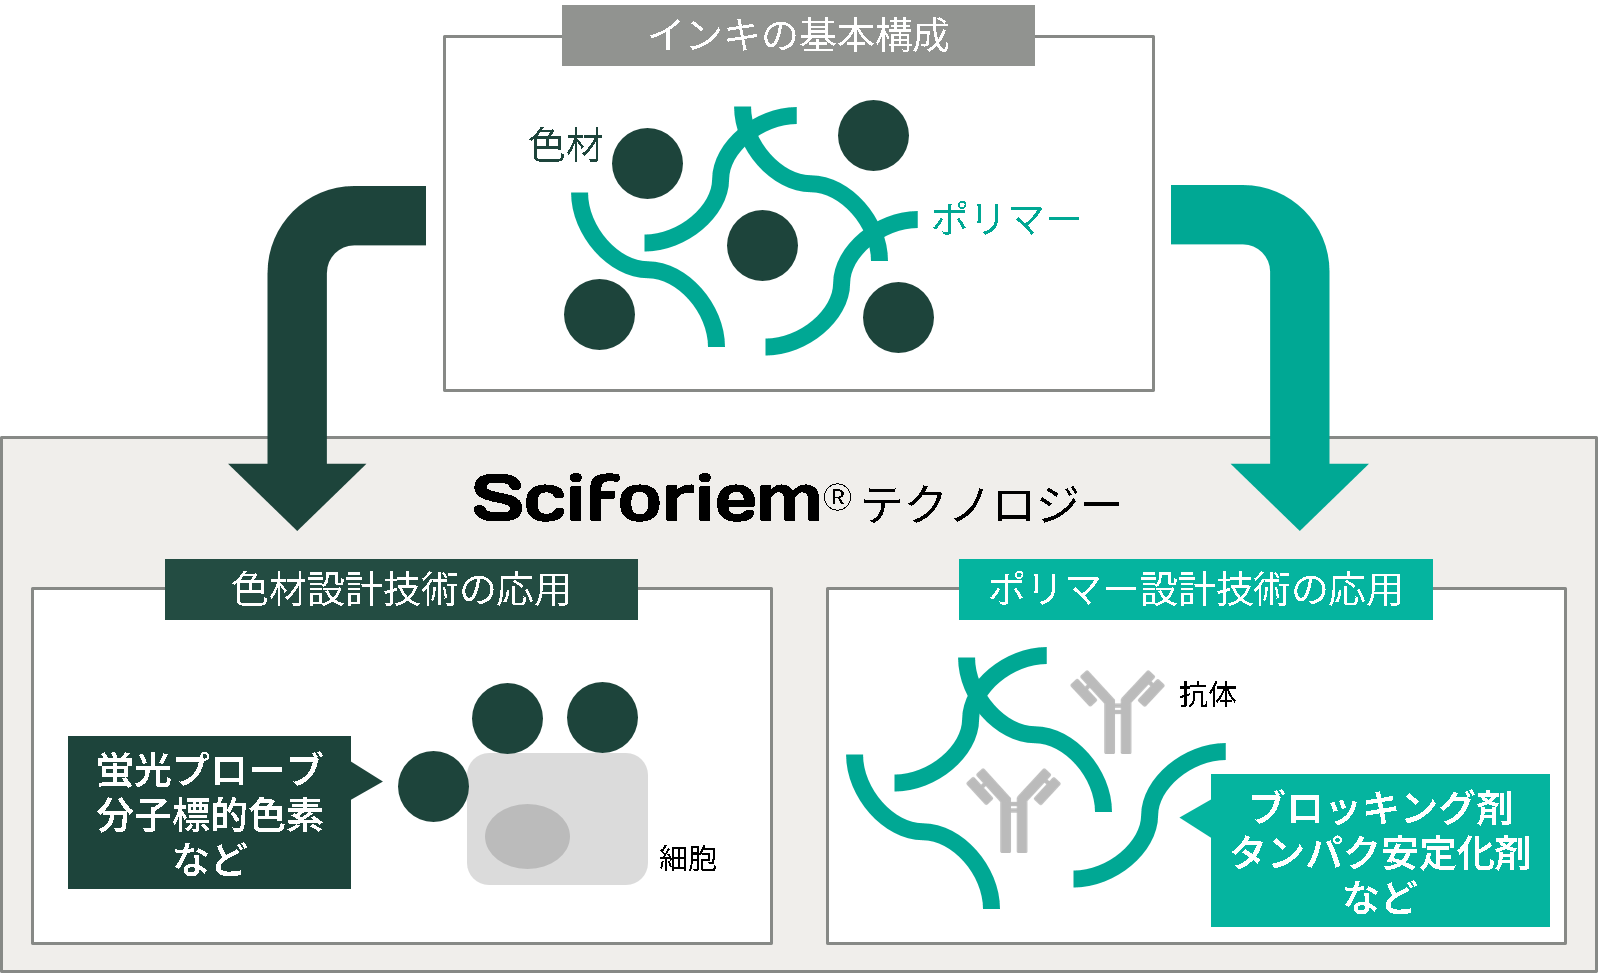 Sciforiem ™将着色剂、聚合物等材料设计技术应用于生物科学领域的技术